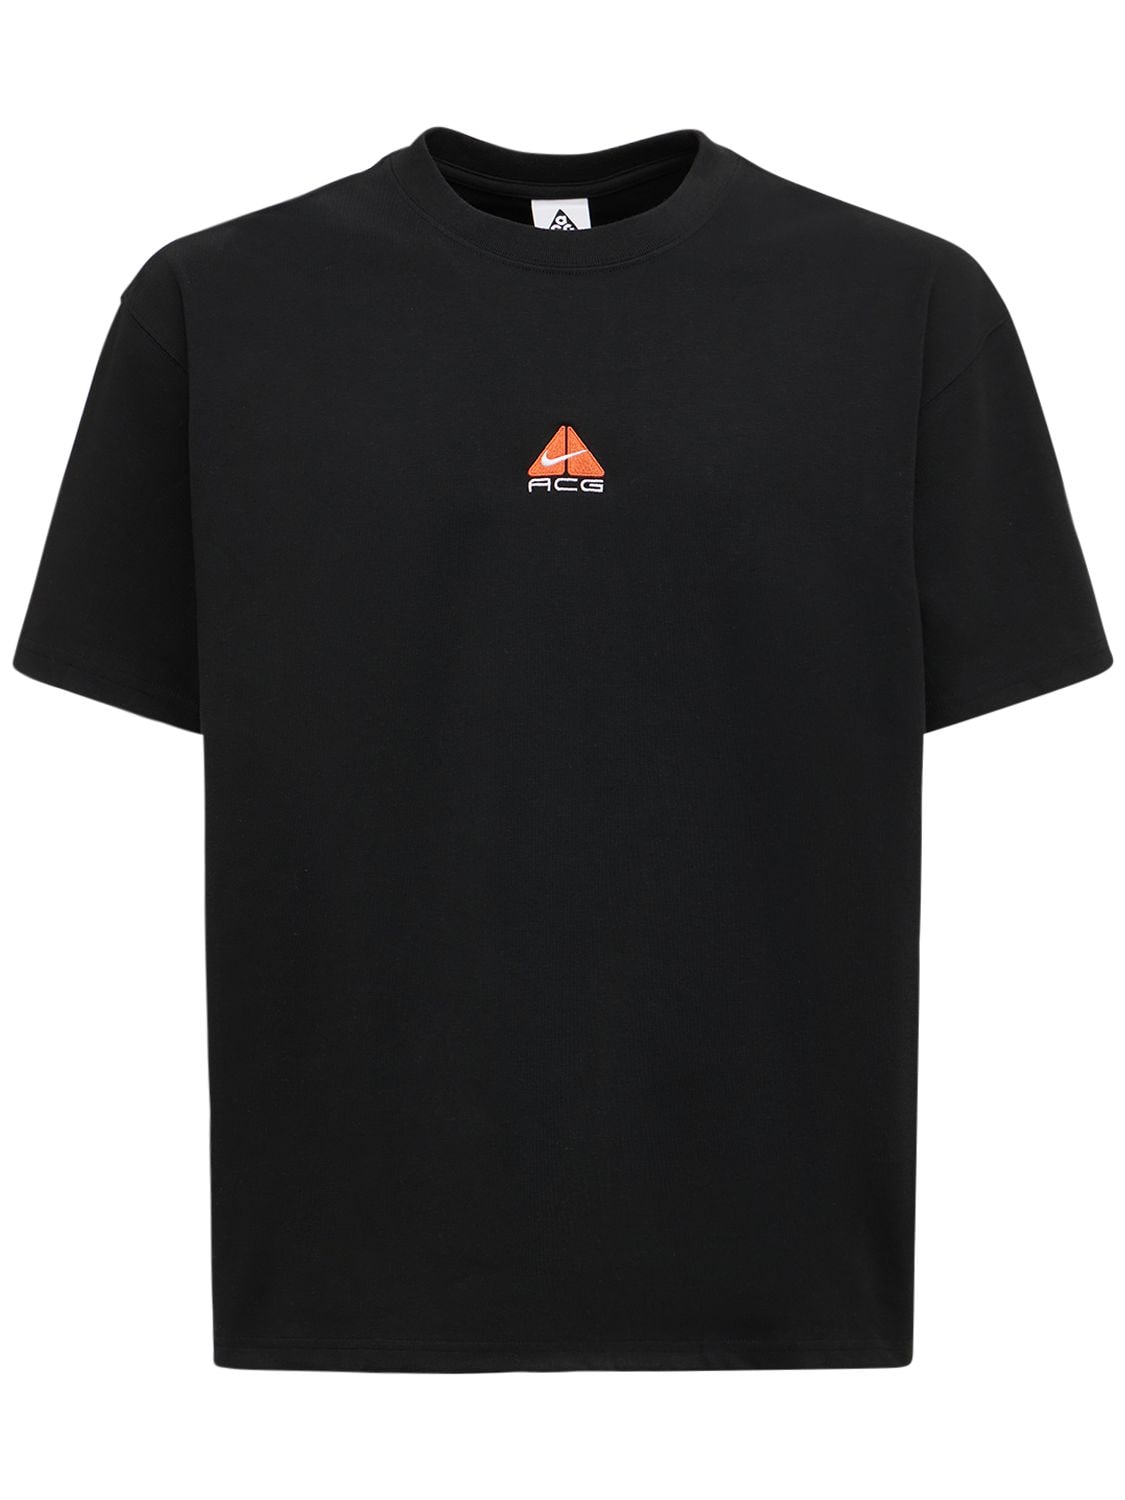 Nike Acg - Logo t-shirt - Black | Luisaviaroma